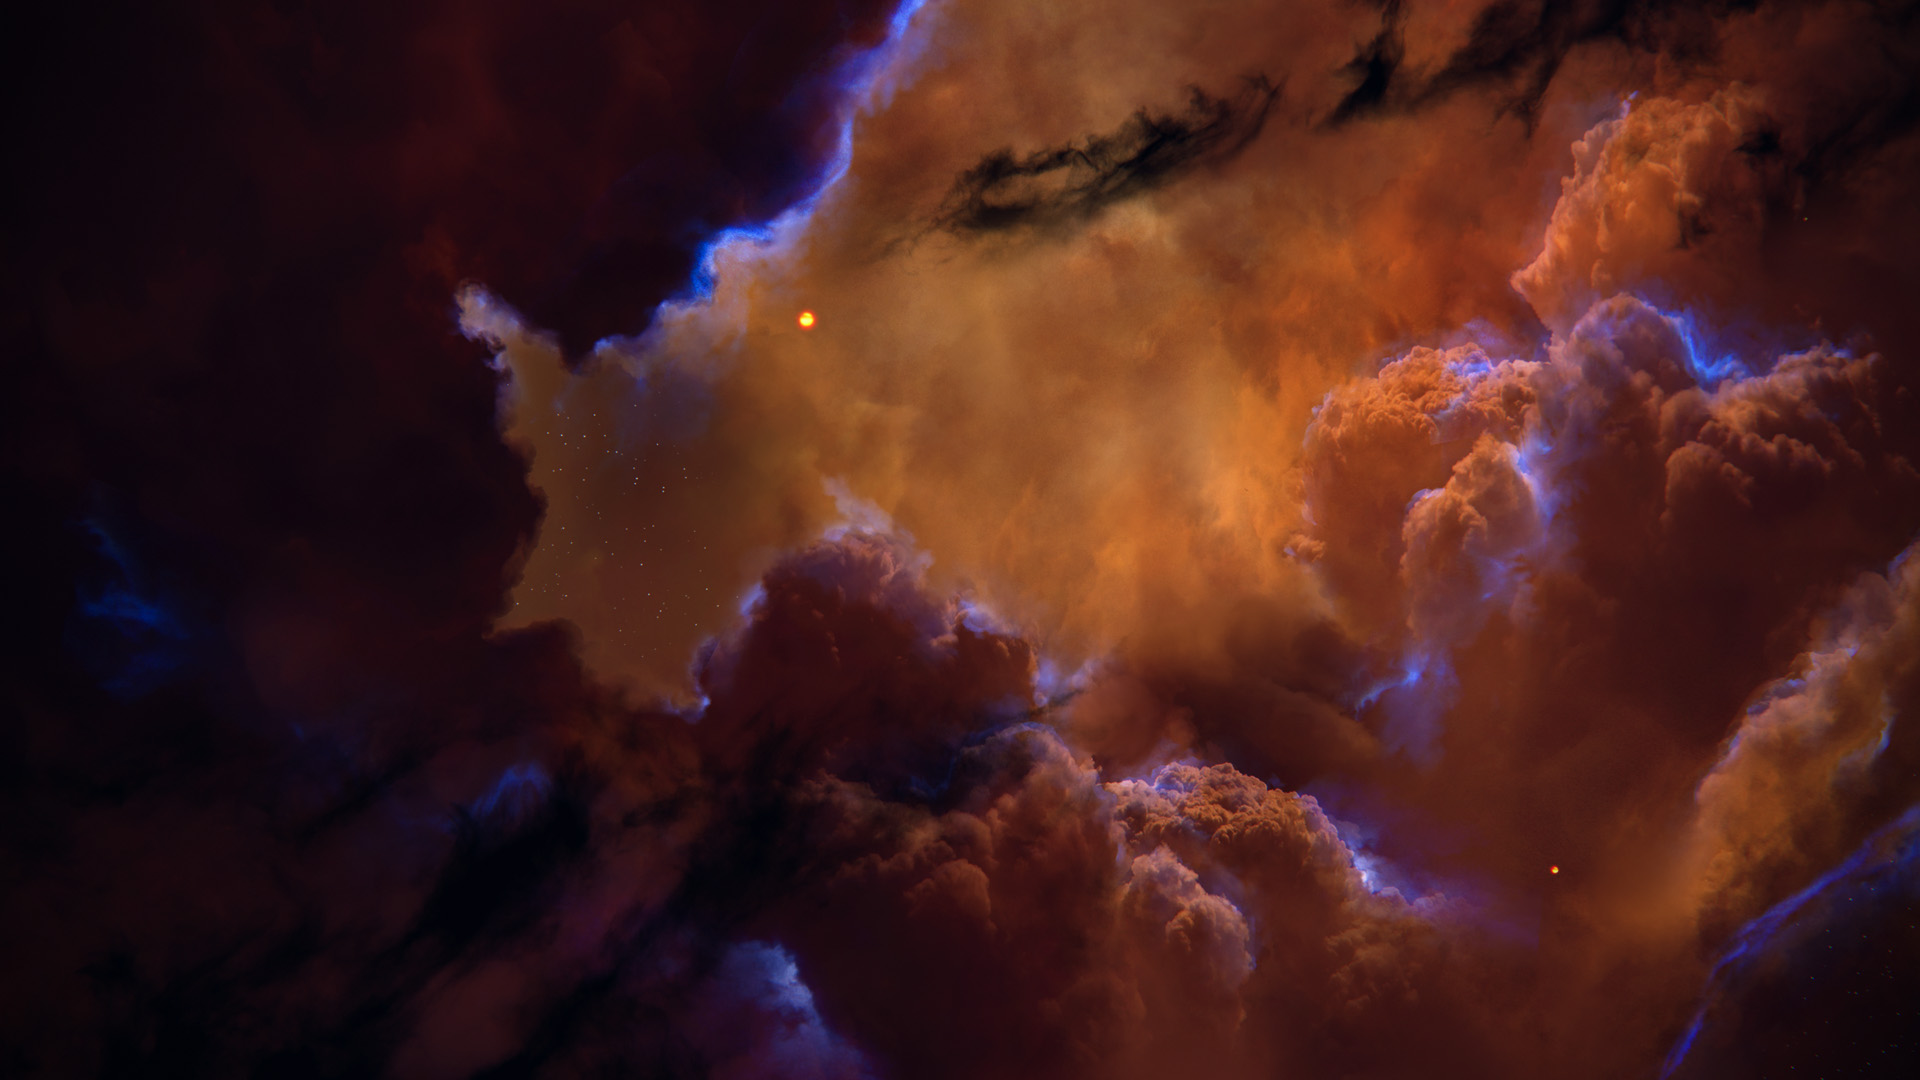 Radiogenic Nebula